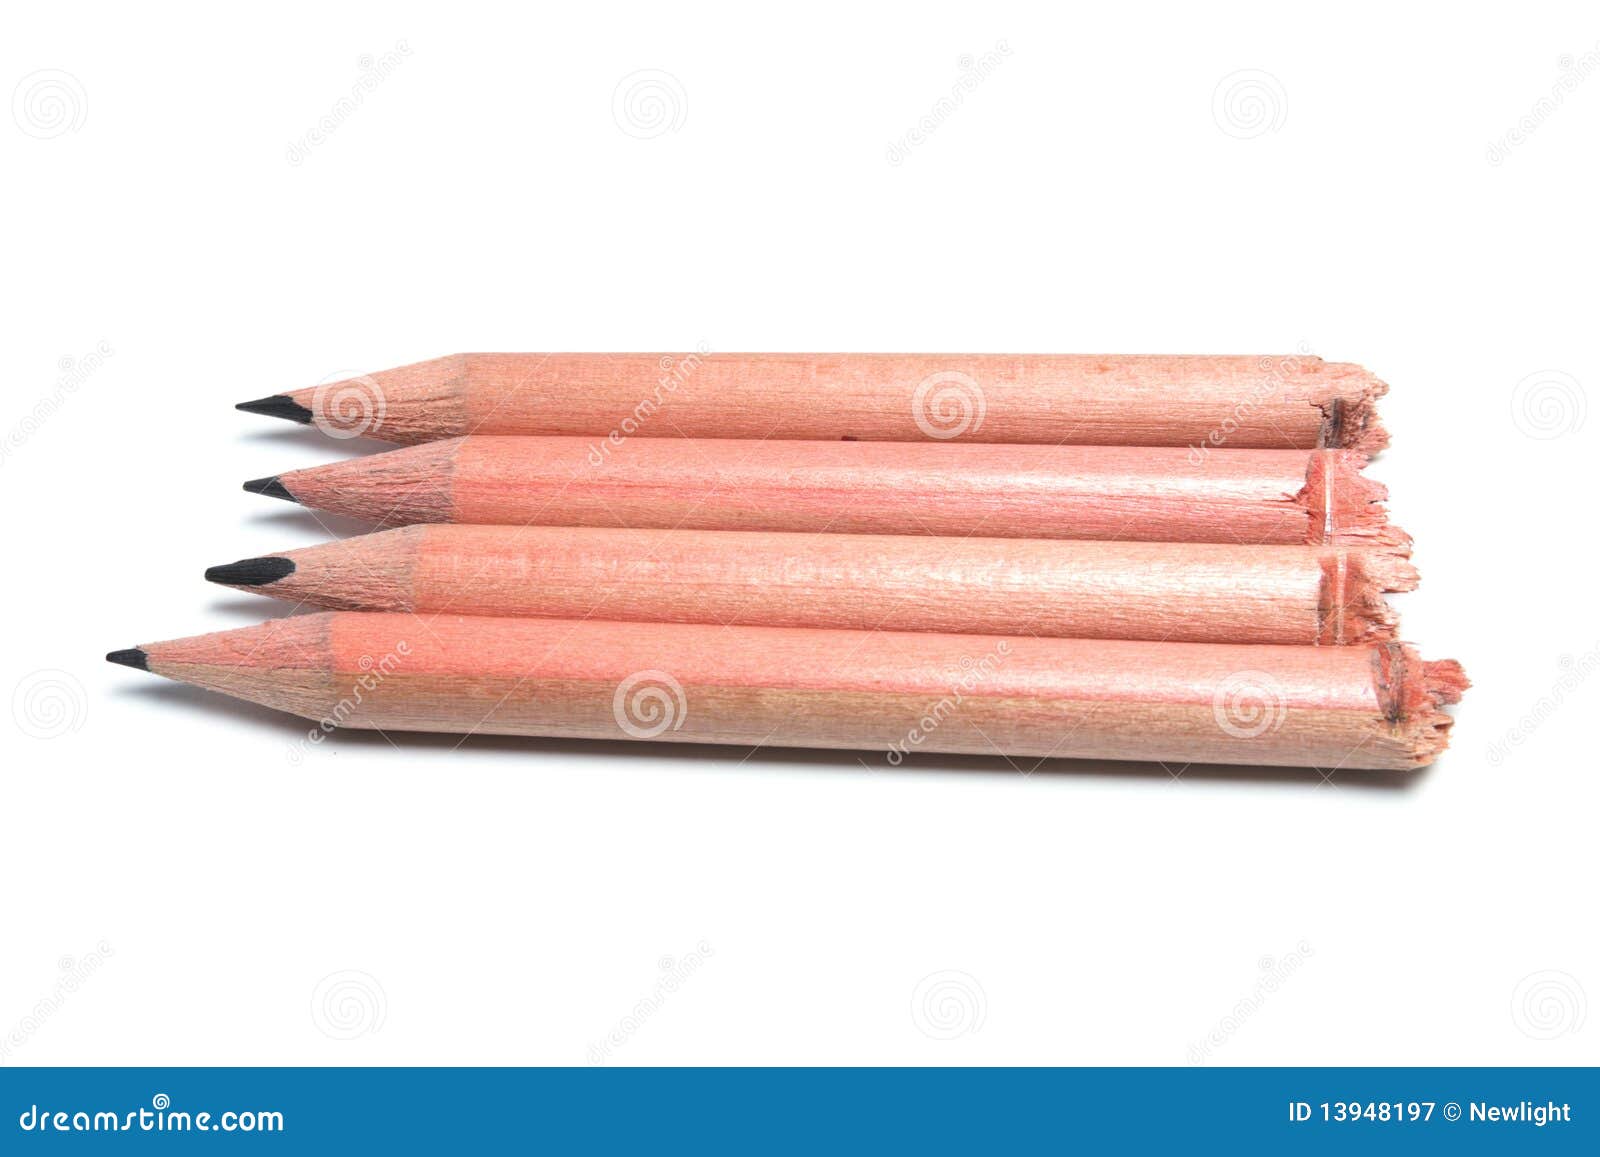 Pencils with Broken Ends stock image. Image of broken - 13948197